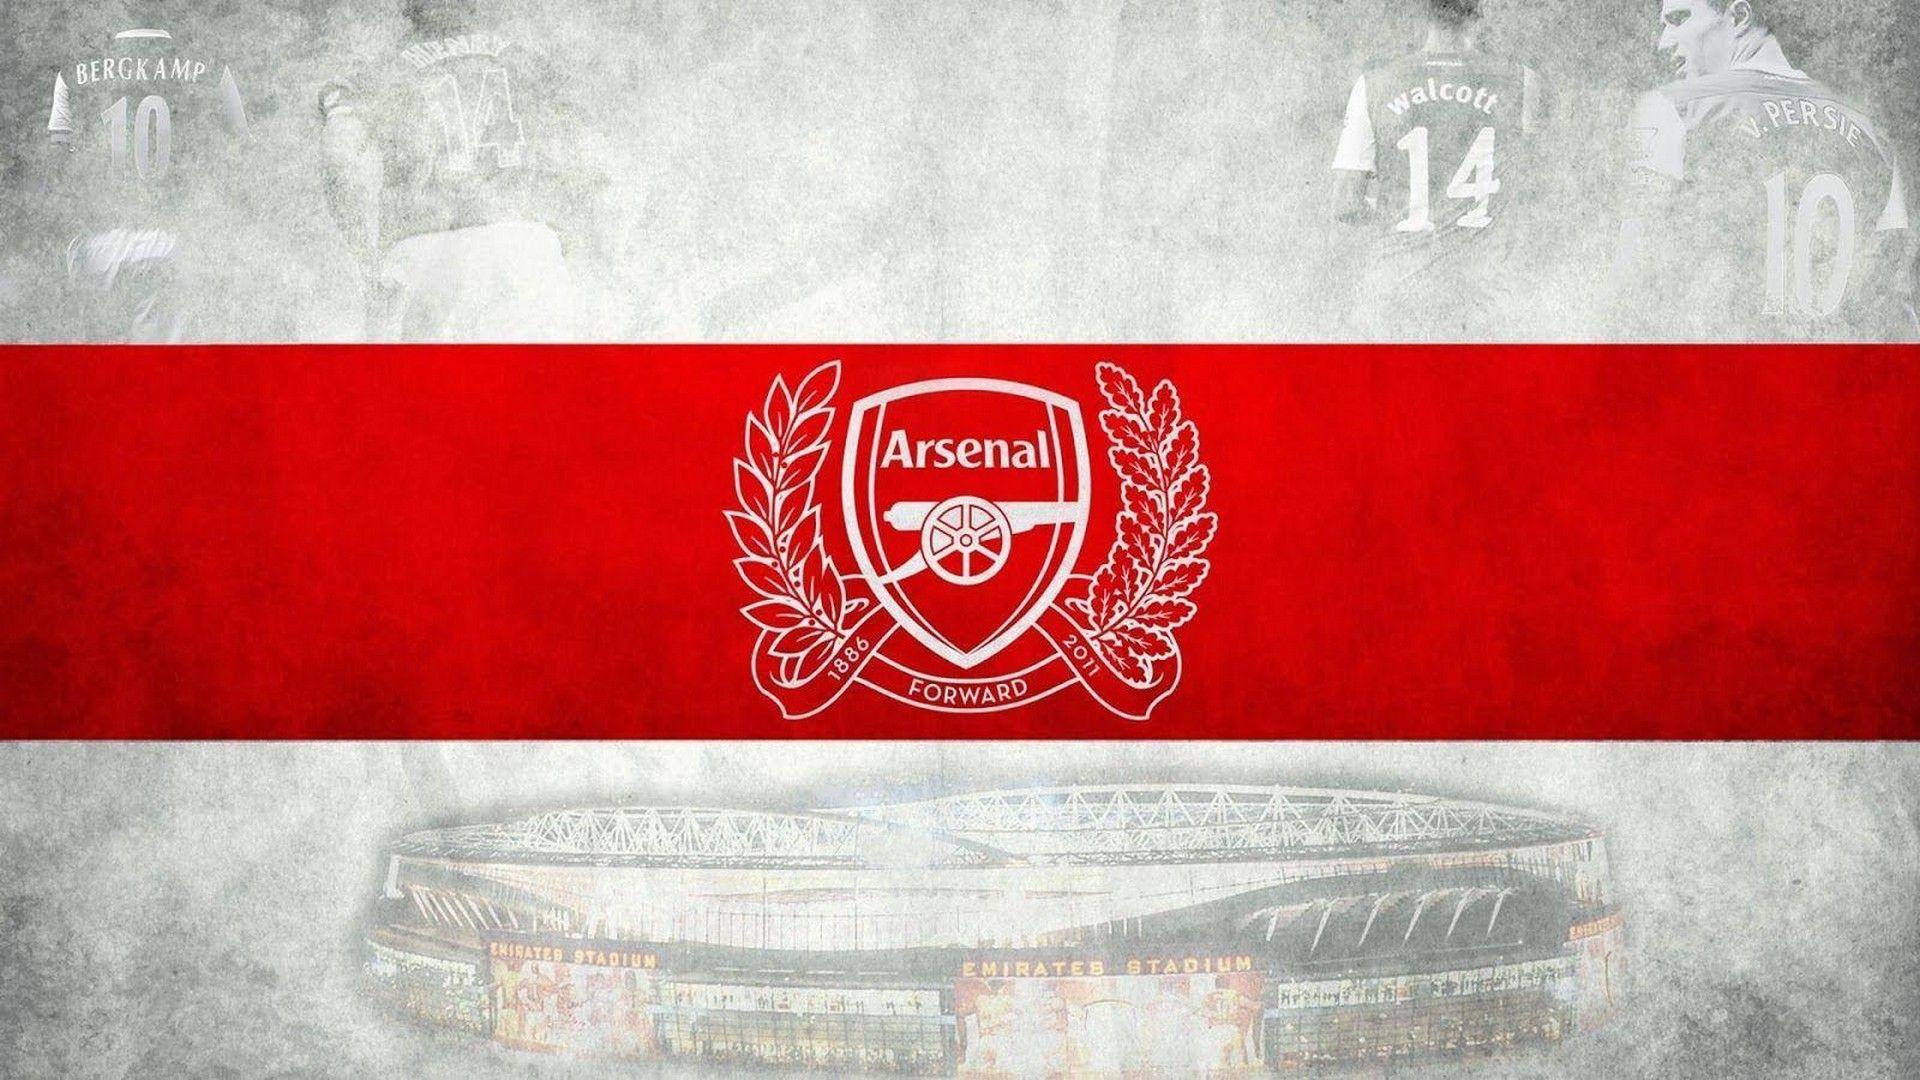 HD Arsenal Wallpaper. Arsenal wallpaper, Arsenal, Arsenal